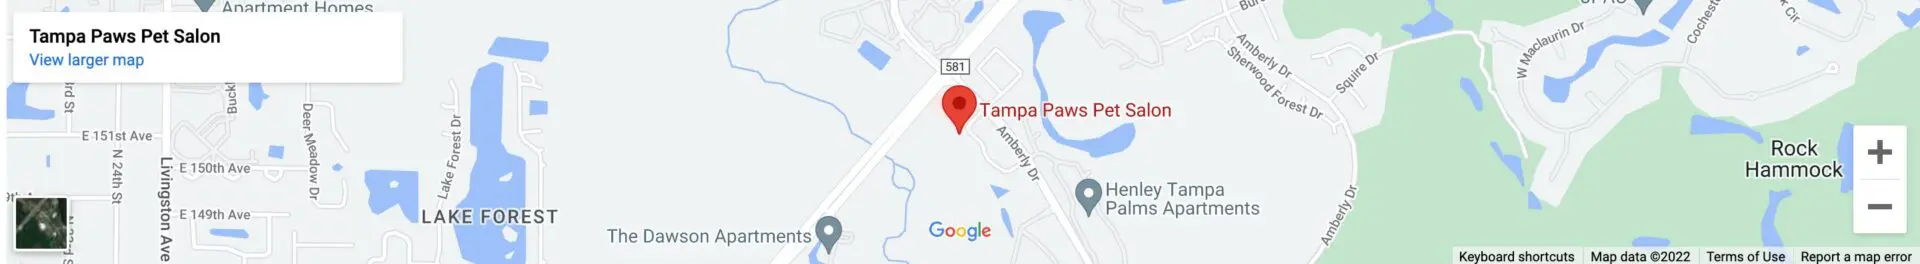 Tampa Paws Pet Salon